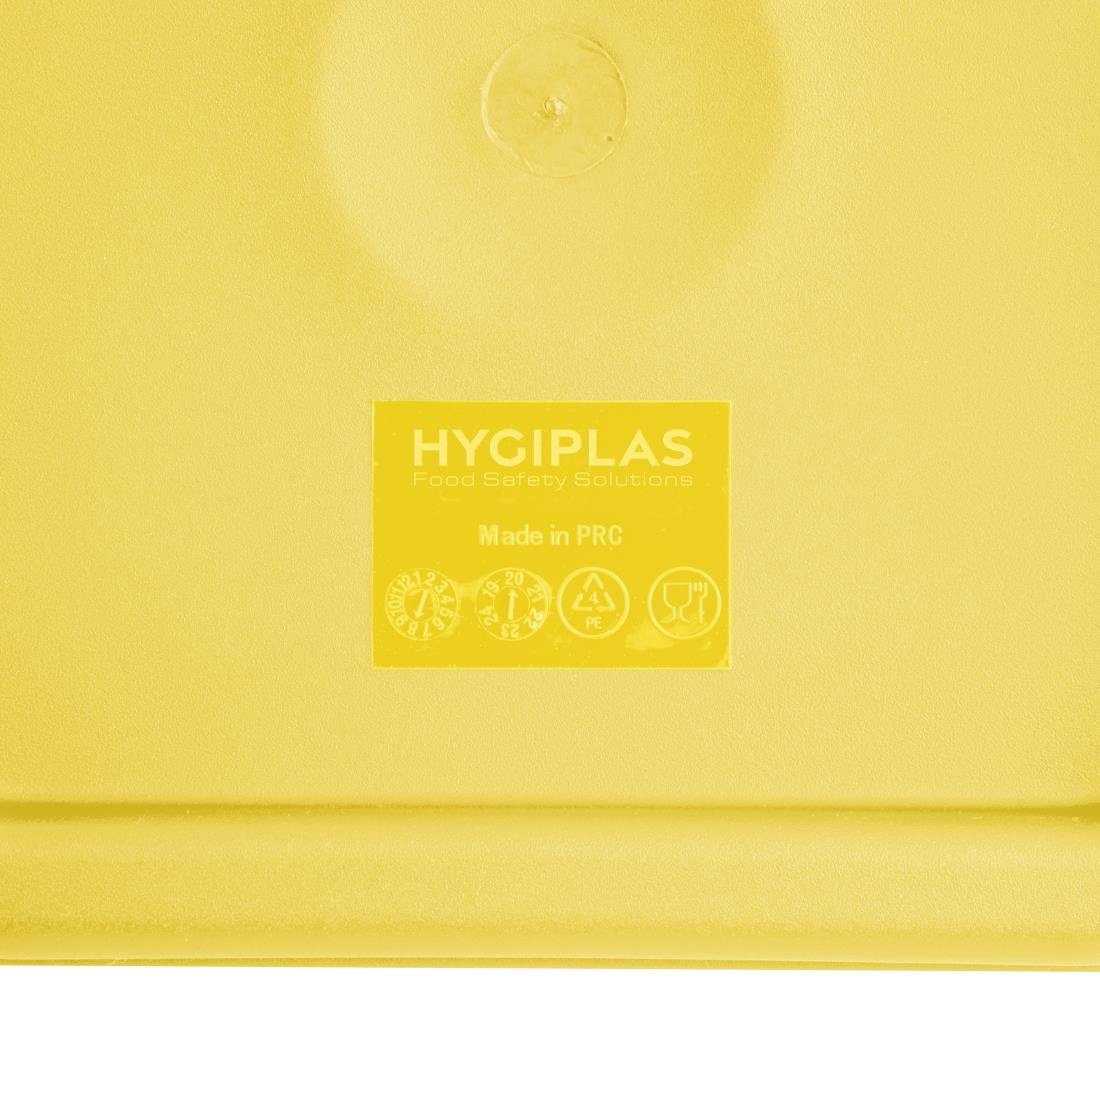 Couvercle moyen carré pour boîte alimentaire Hygiplas jaune